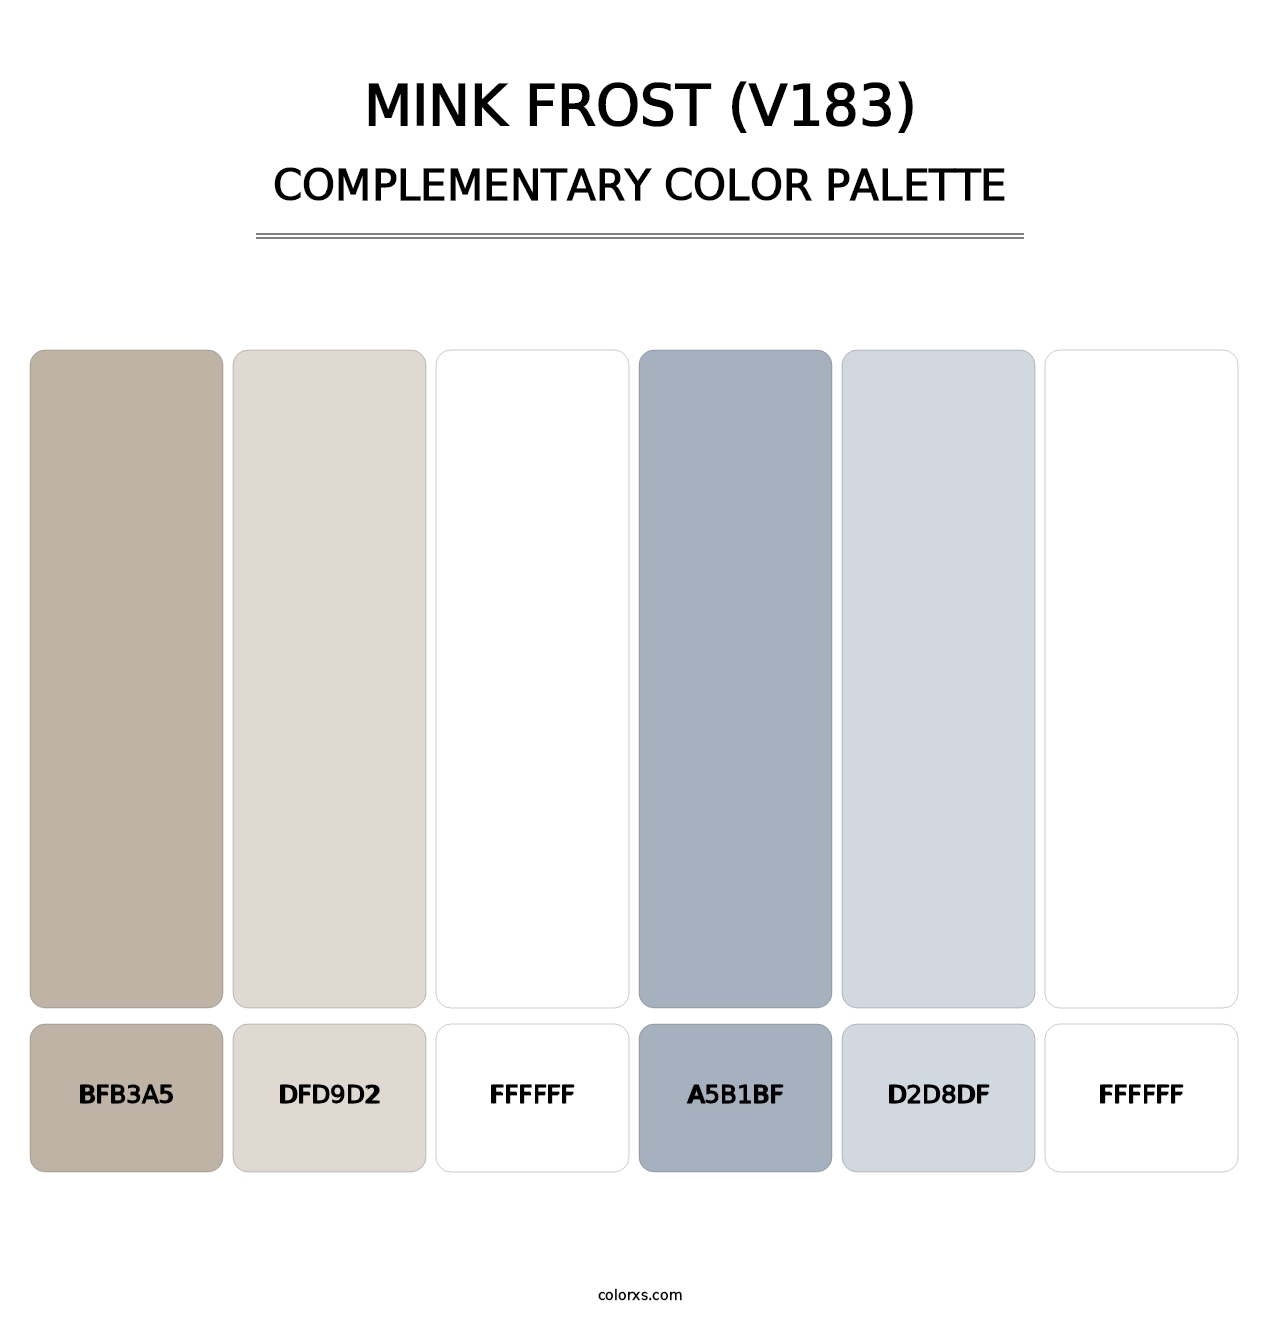 Mink Frost (V183) - Complementary Color Palette